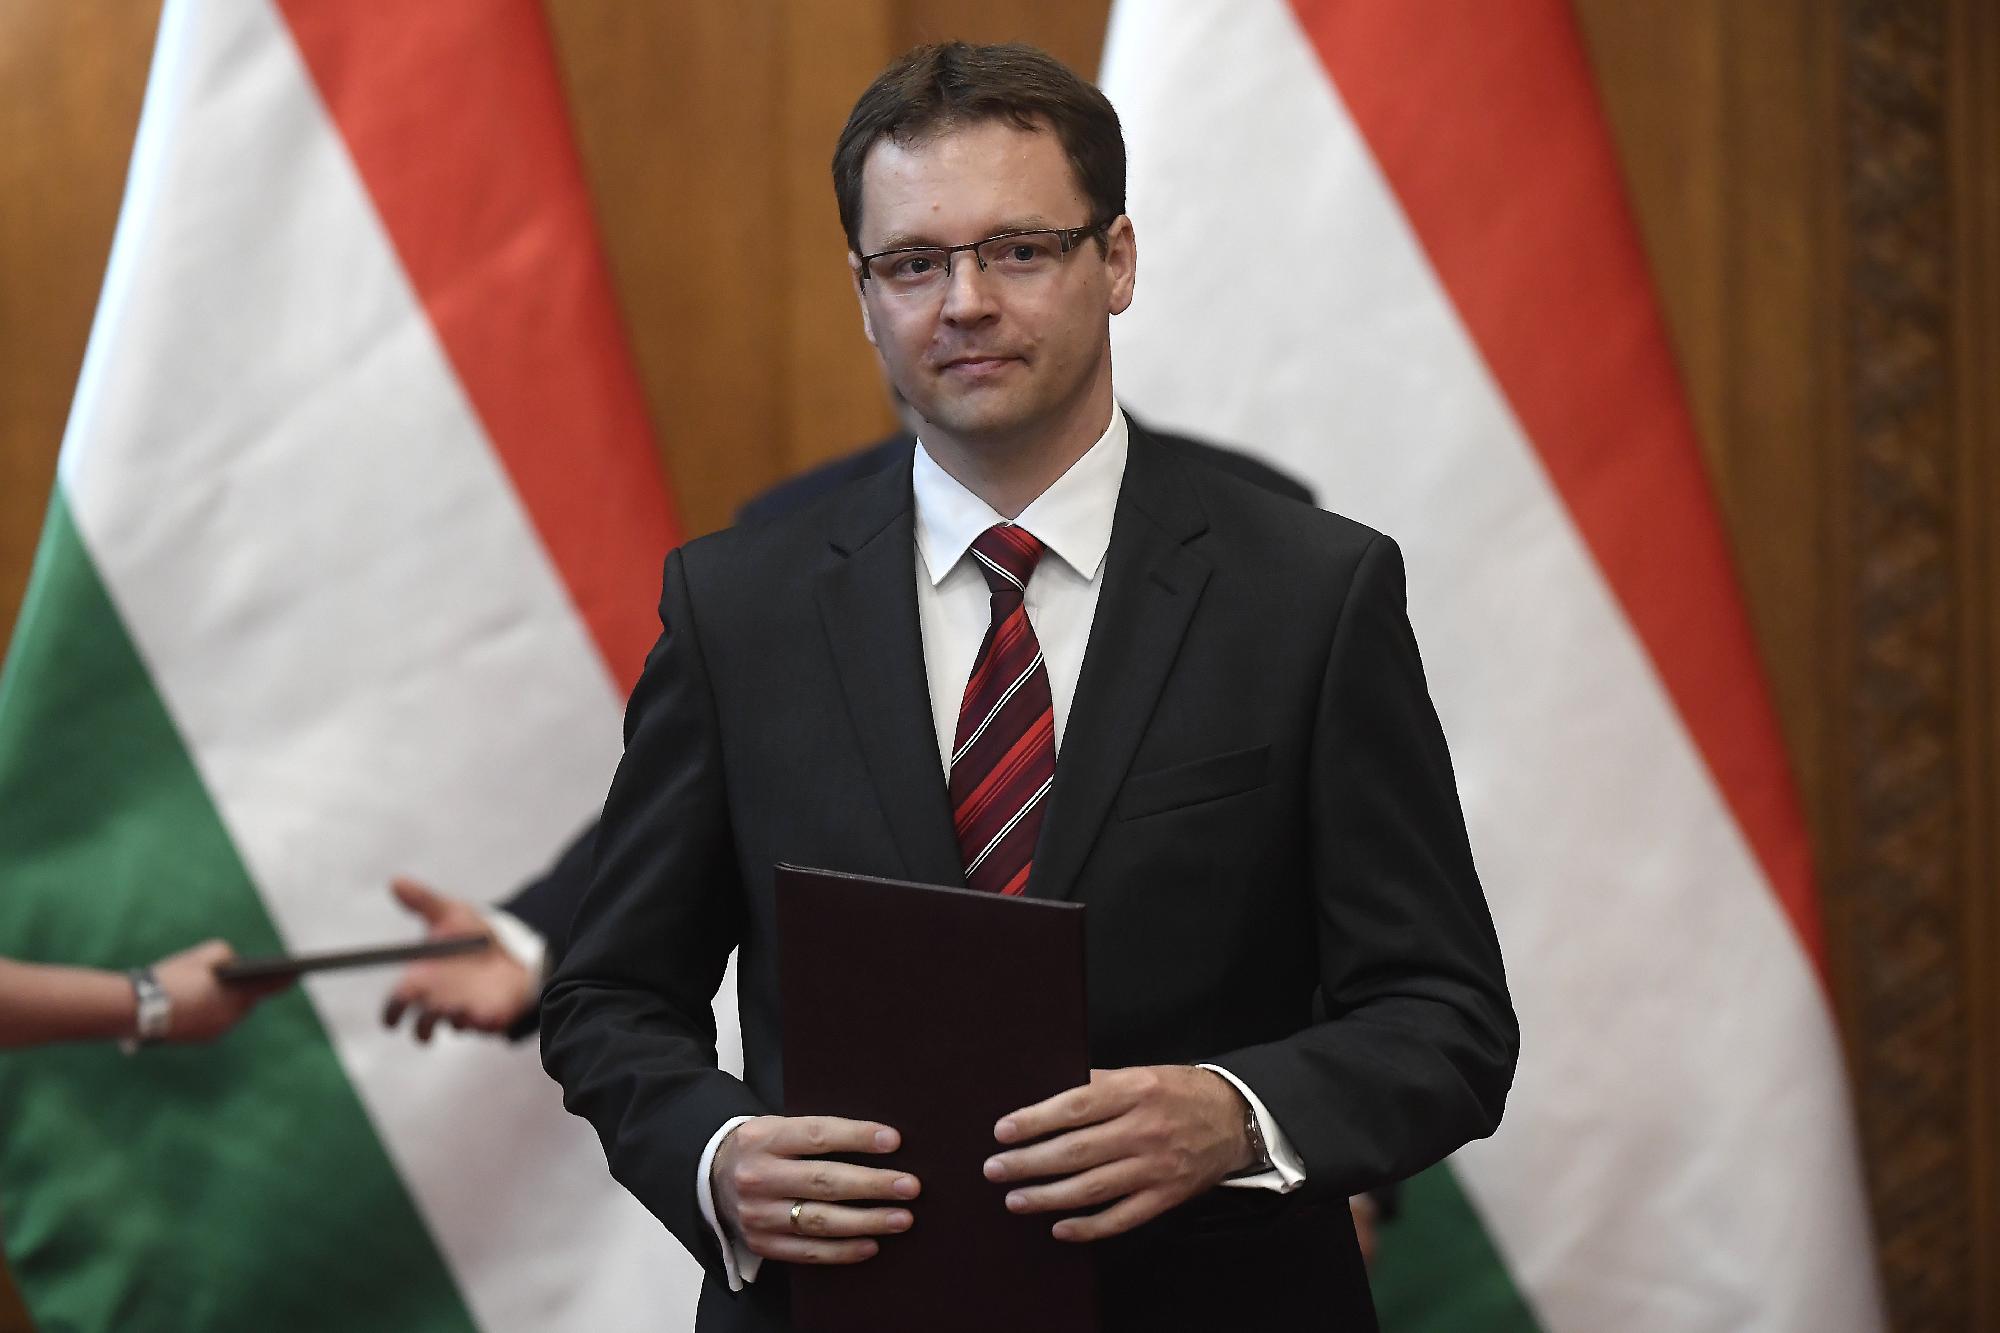 A magyar állam nem bevándorlással akarja kezelni a nehézségeket